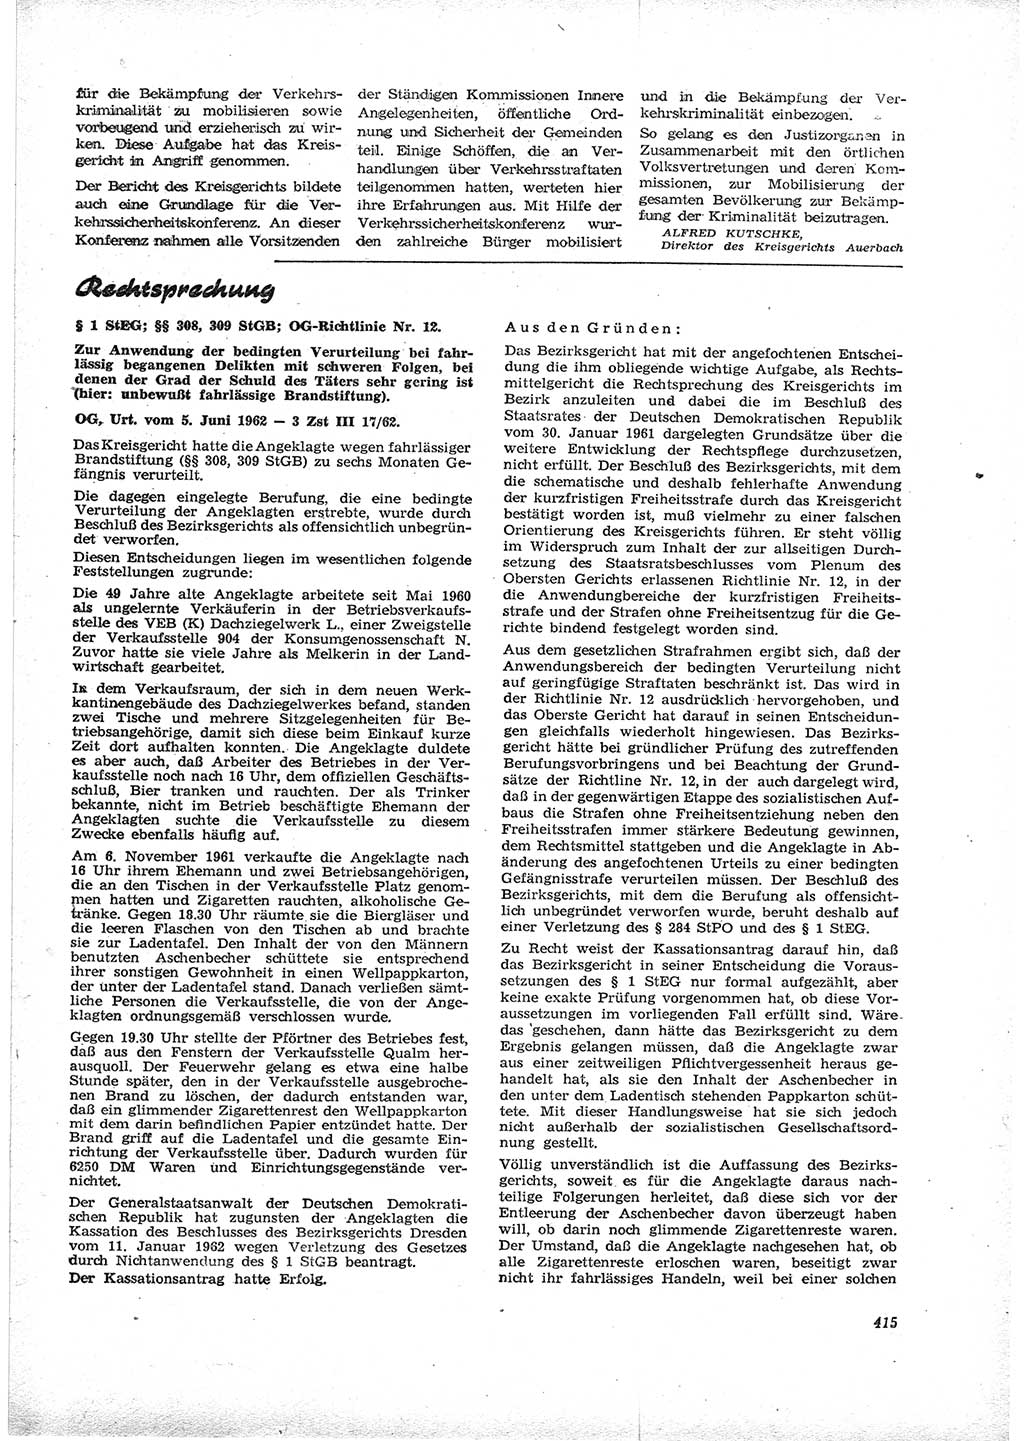 Neue Justiz (NJ), Zeitschrift für Recht und Rechtswissenschaft [Deutsche Demokratische Republik (DDR)], 16. Jahrgang 1962, Seite 415 (NJ DDR 1962, S. 415)